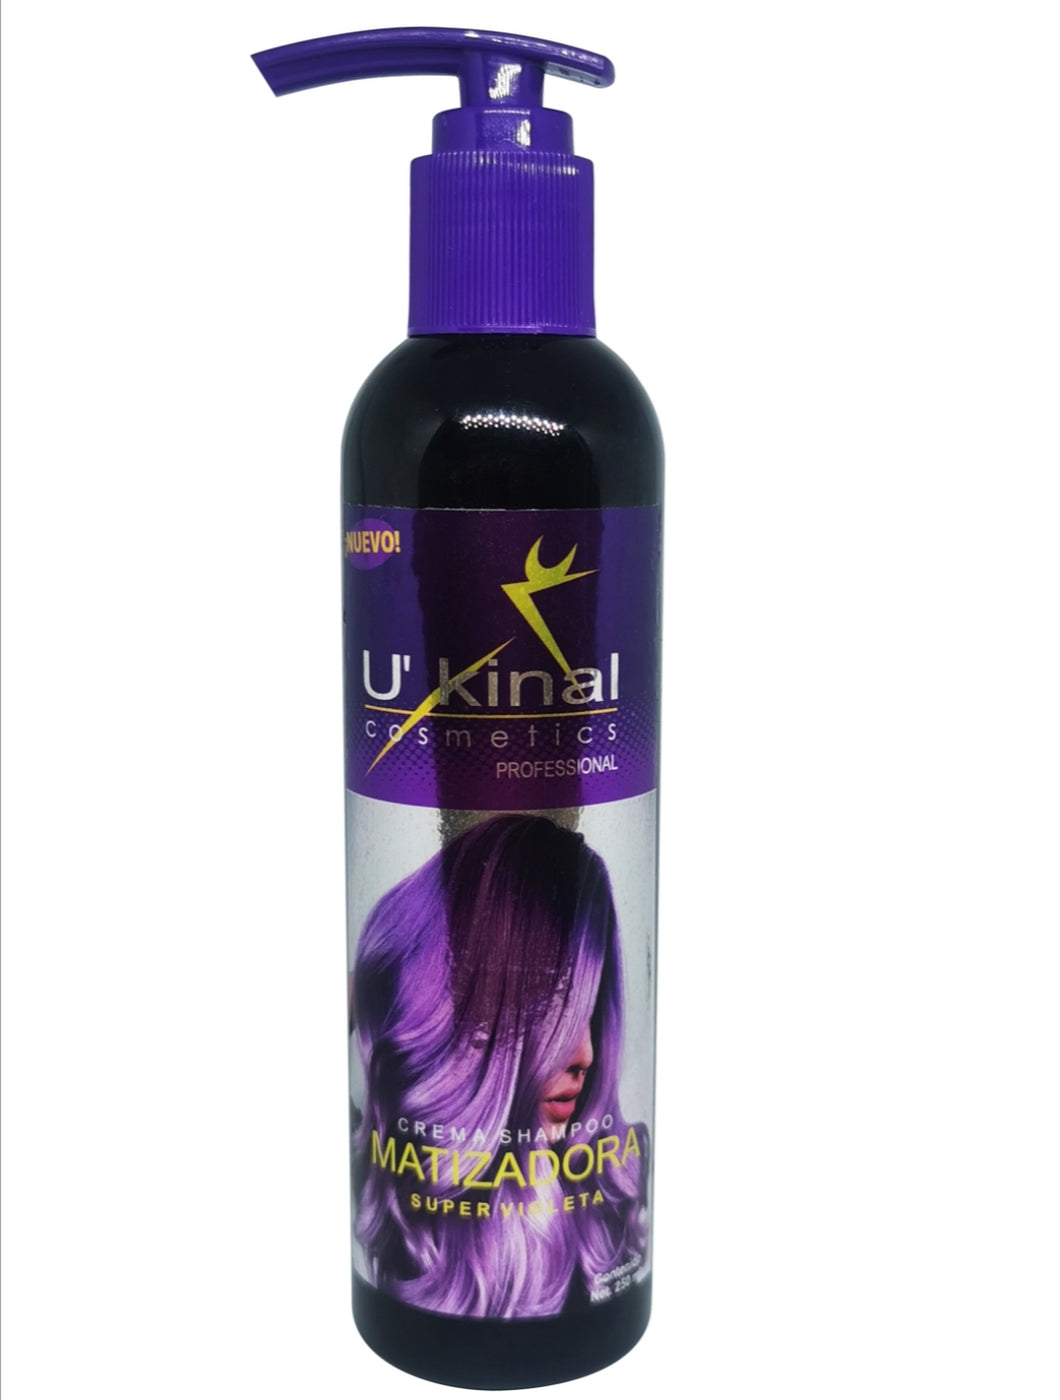 Crema Shampoo Matizador Ultra Violeta de 250g